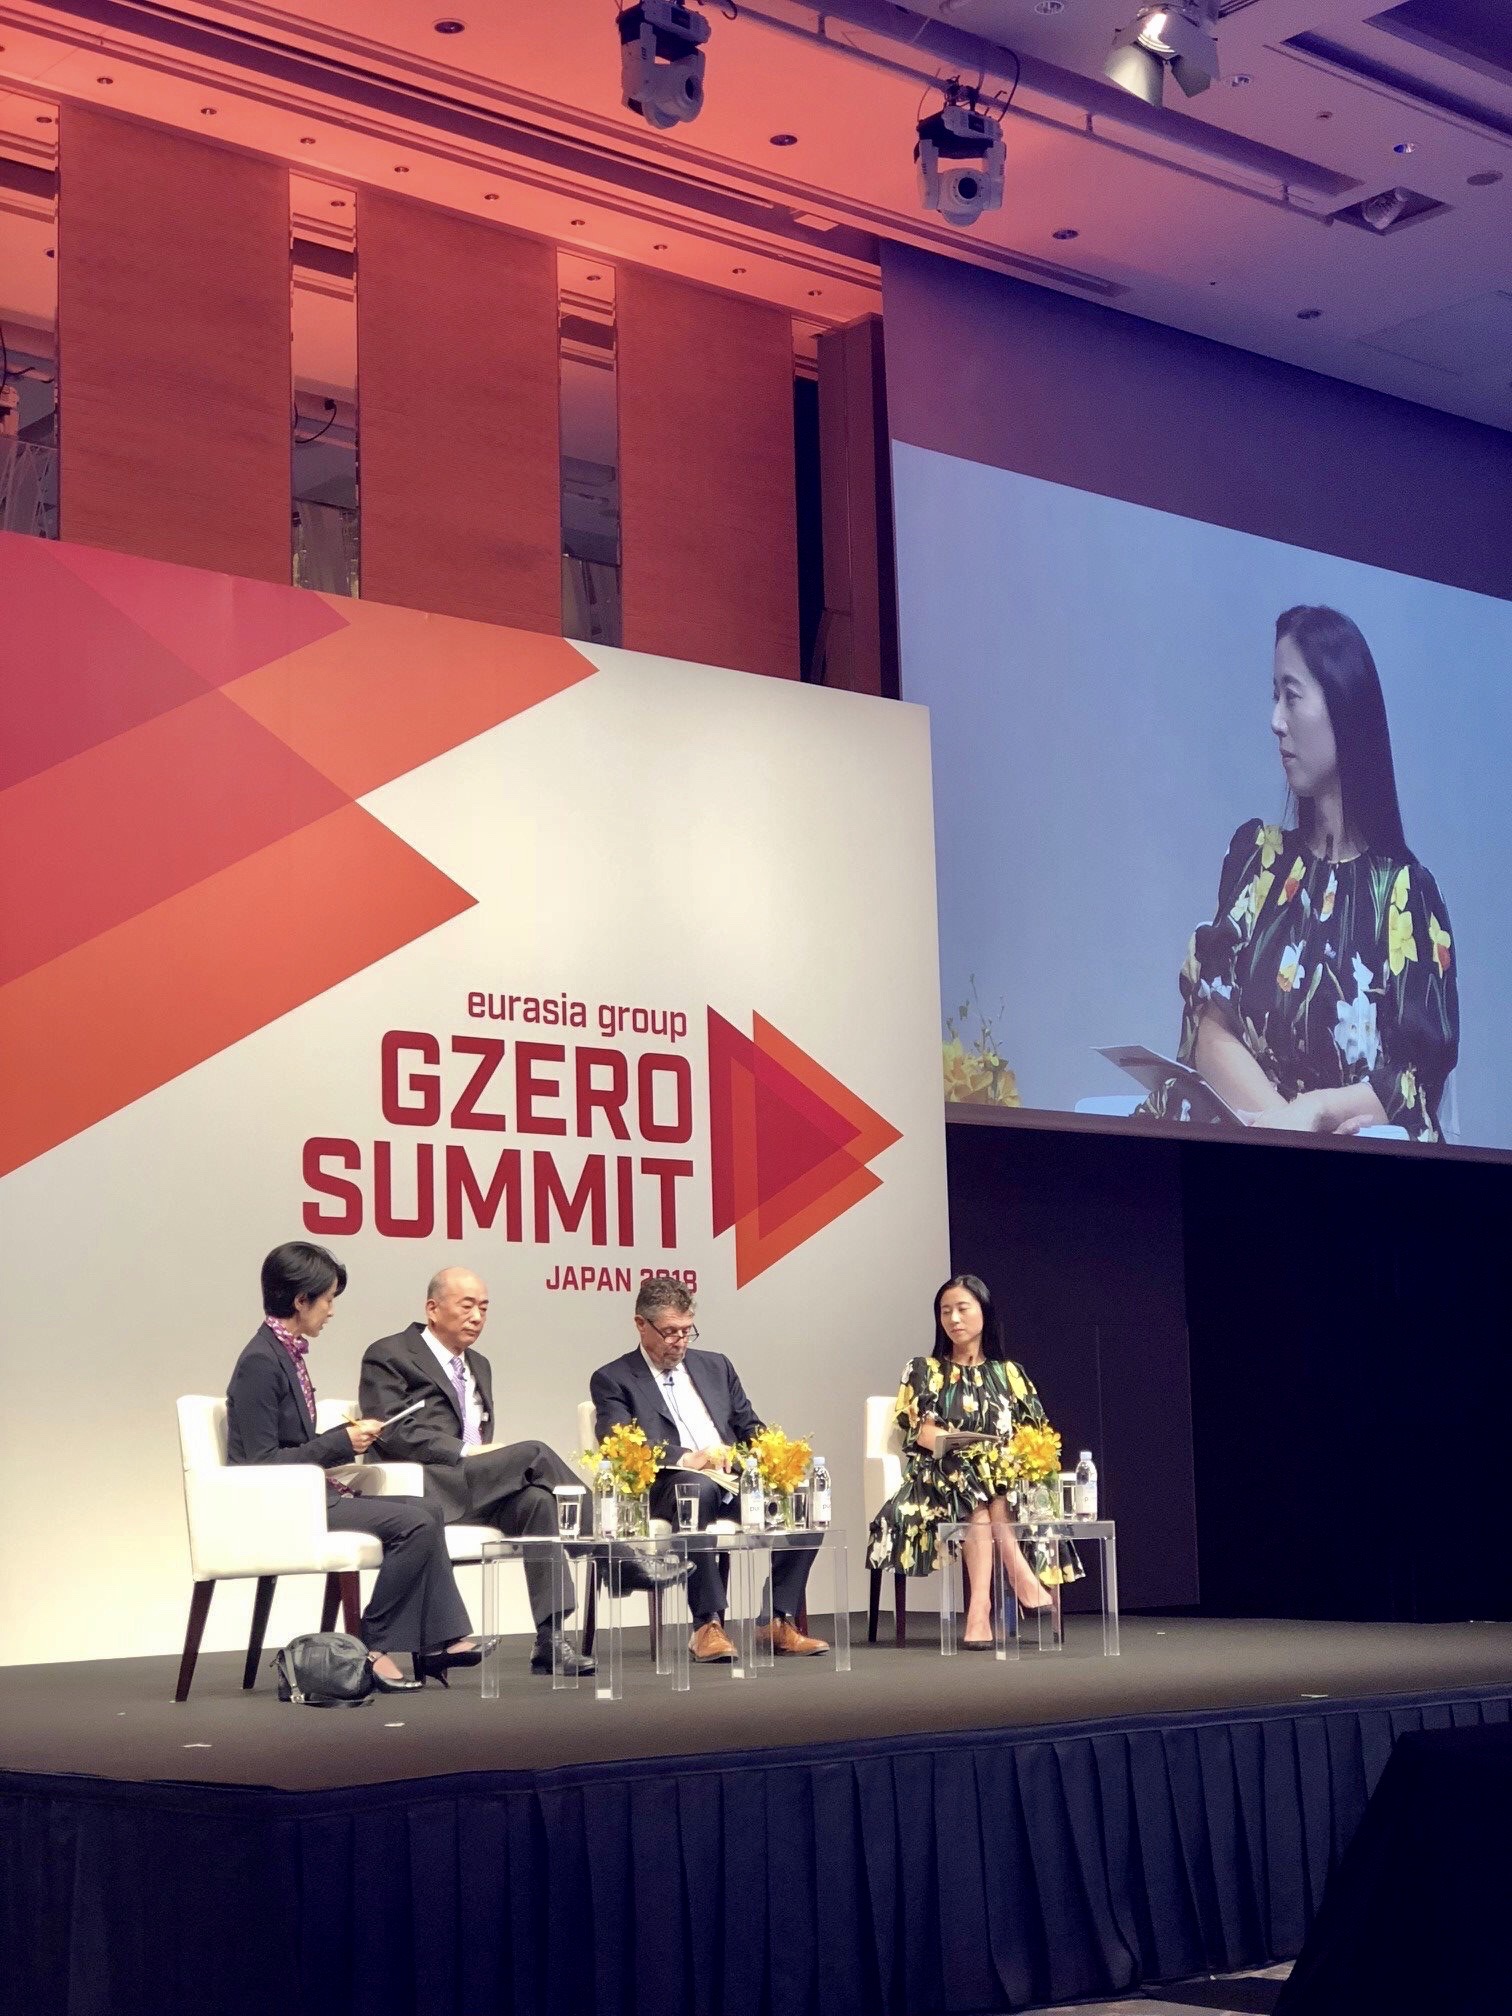 G-zero summit